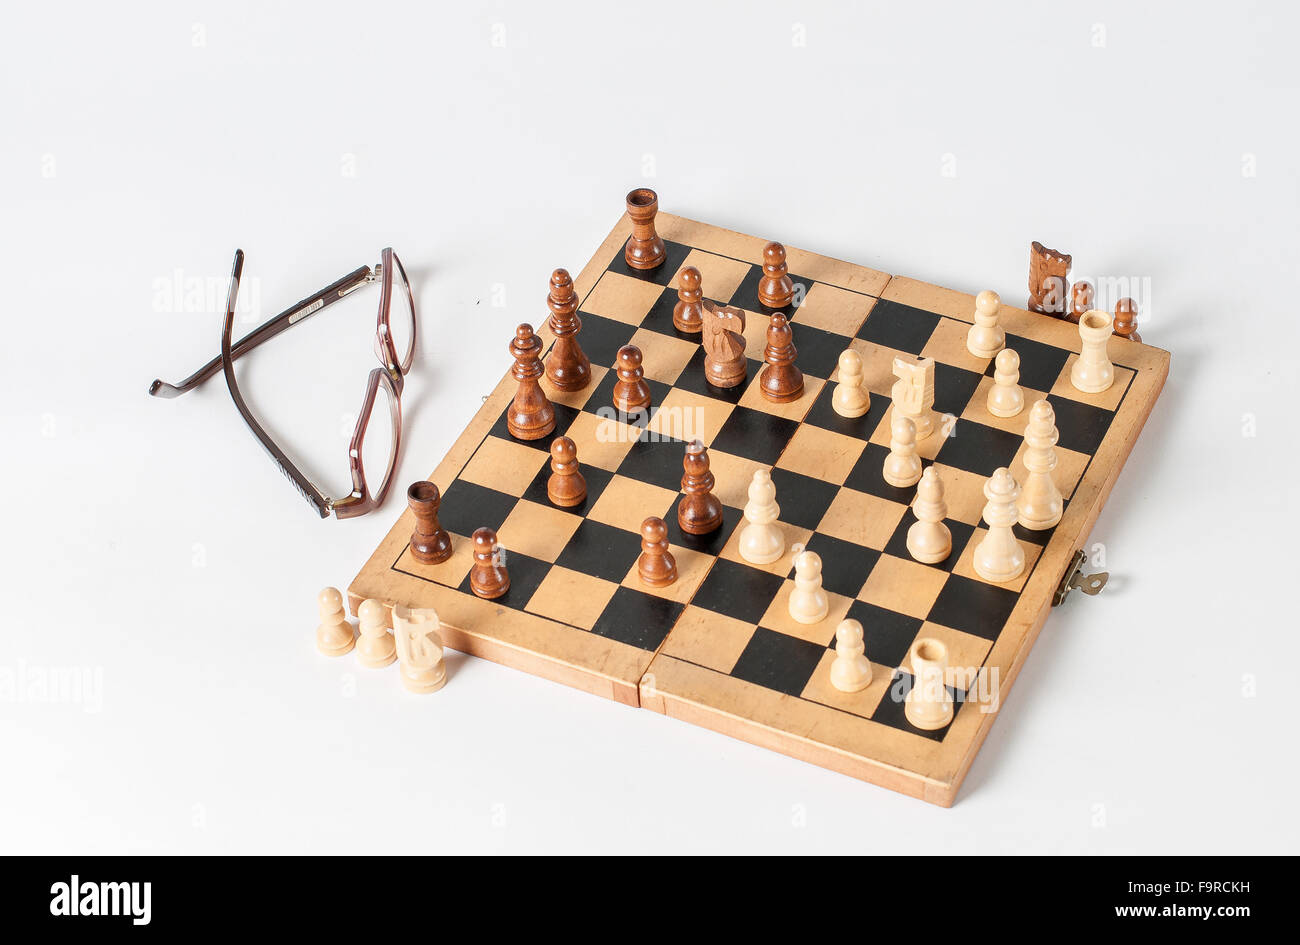 le plateau de jeu d'échecs est photographié sur une base blanche Banque D'Images